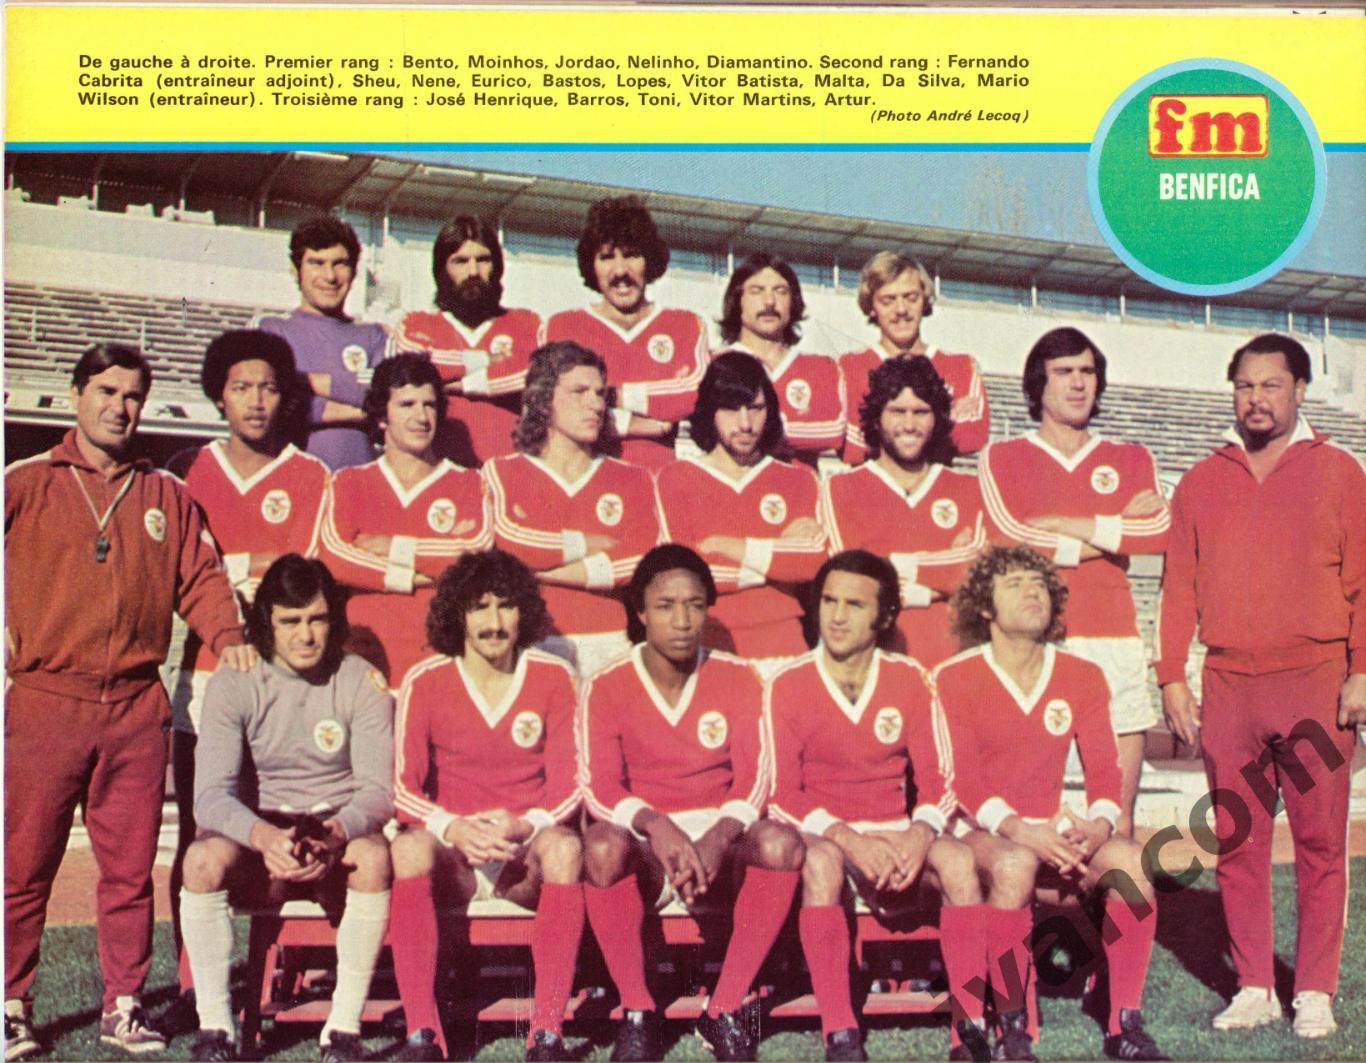 Журнал FOOTBALL MAGAZINE №197 за 1976 год.